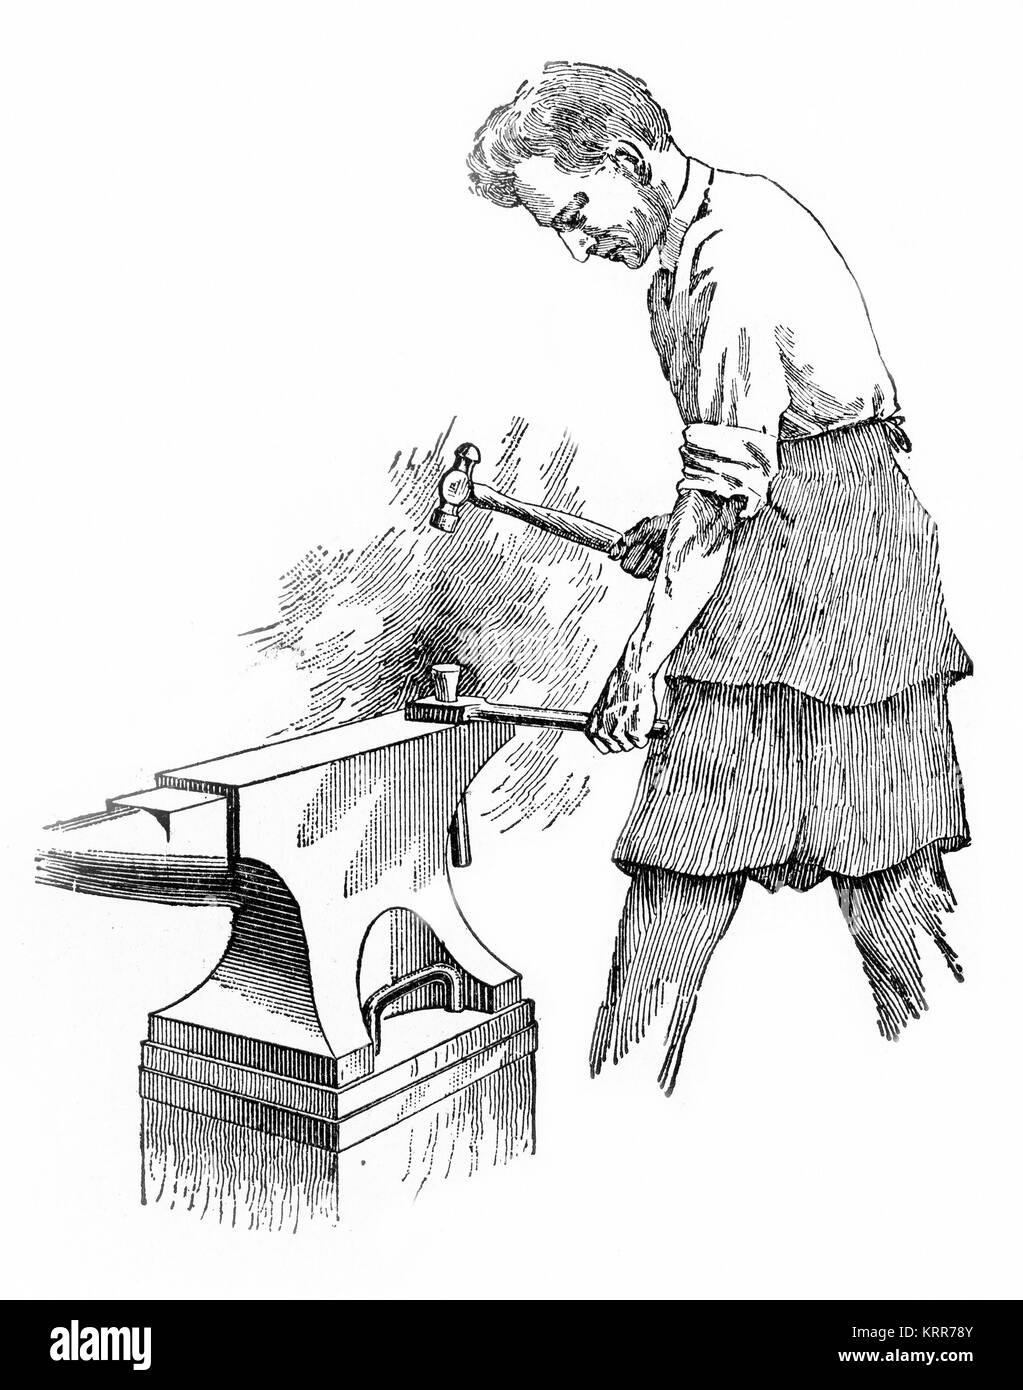 Gravure d'un forgeron, devançant un bloc de fer chaud sur une enclume. D'une gravure faite dans les années 1880. Banque D'Images